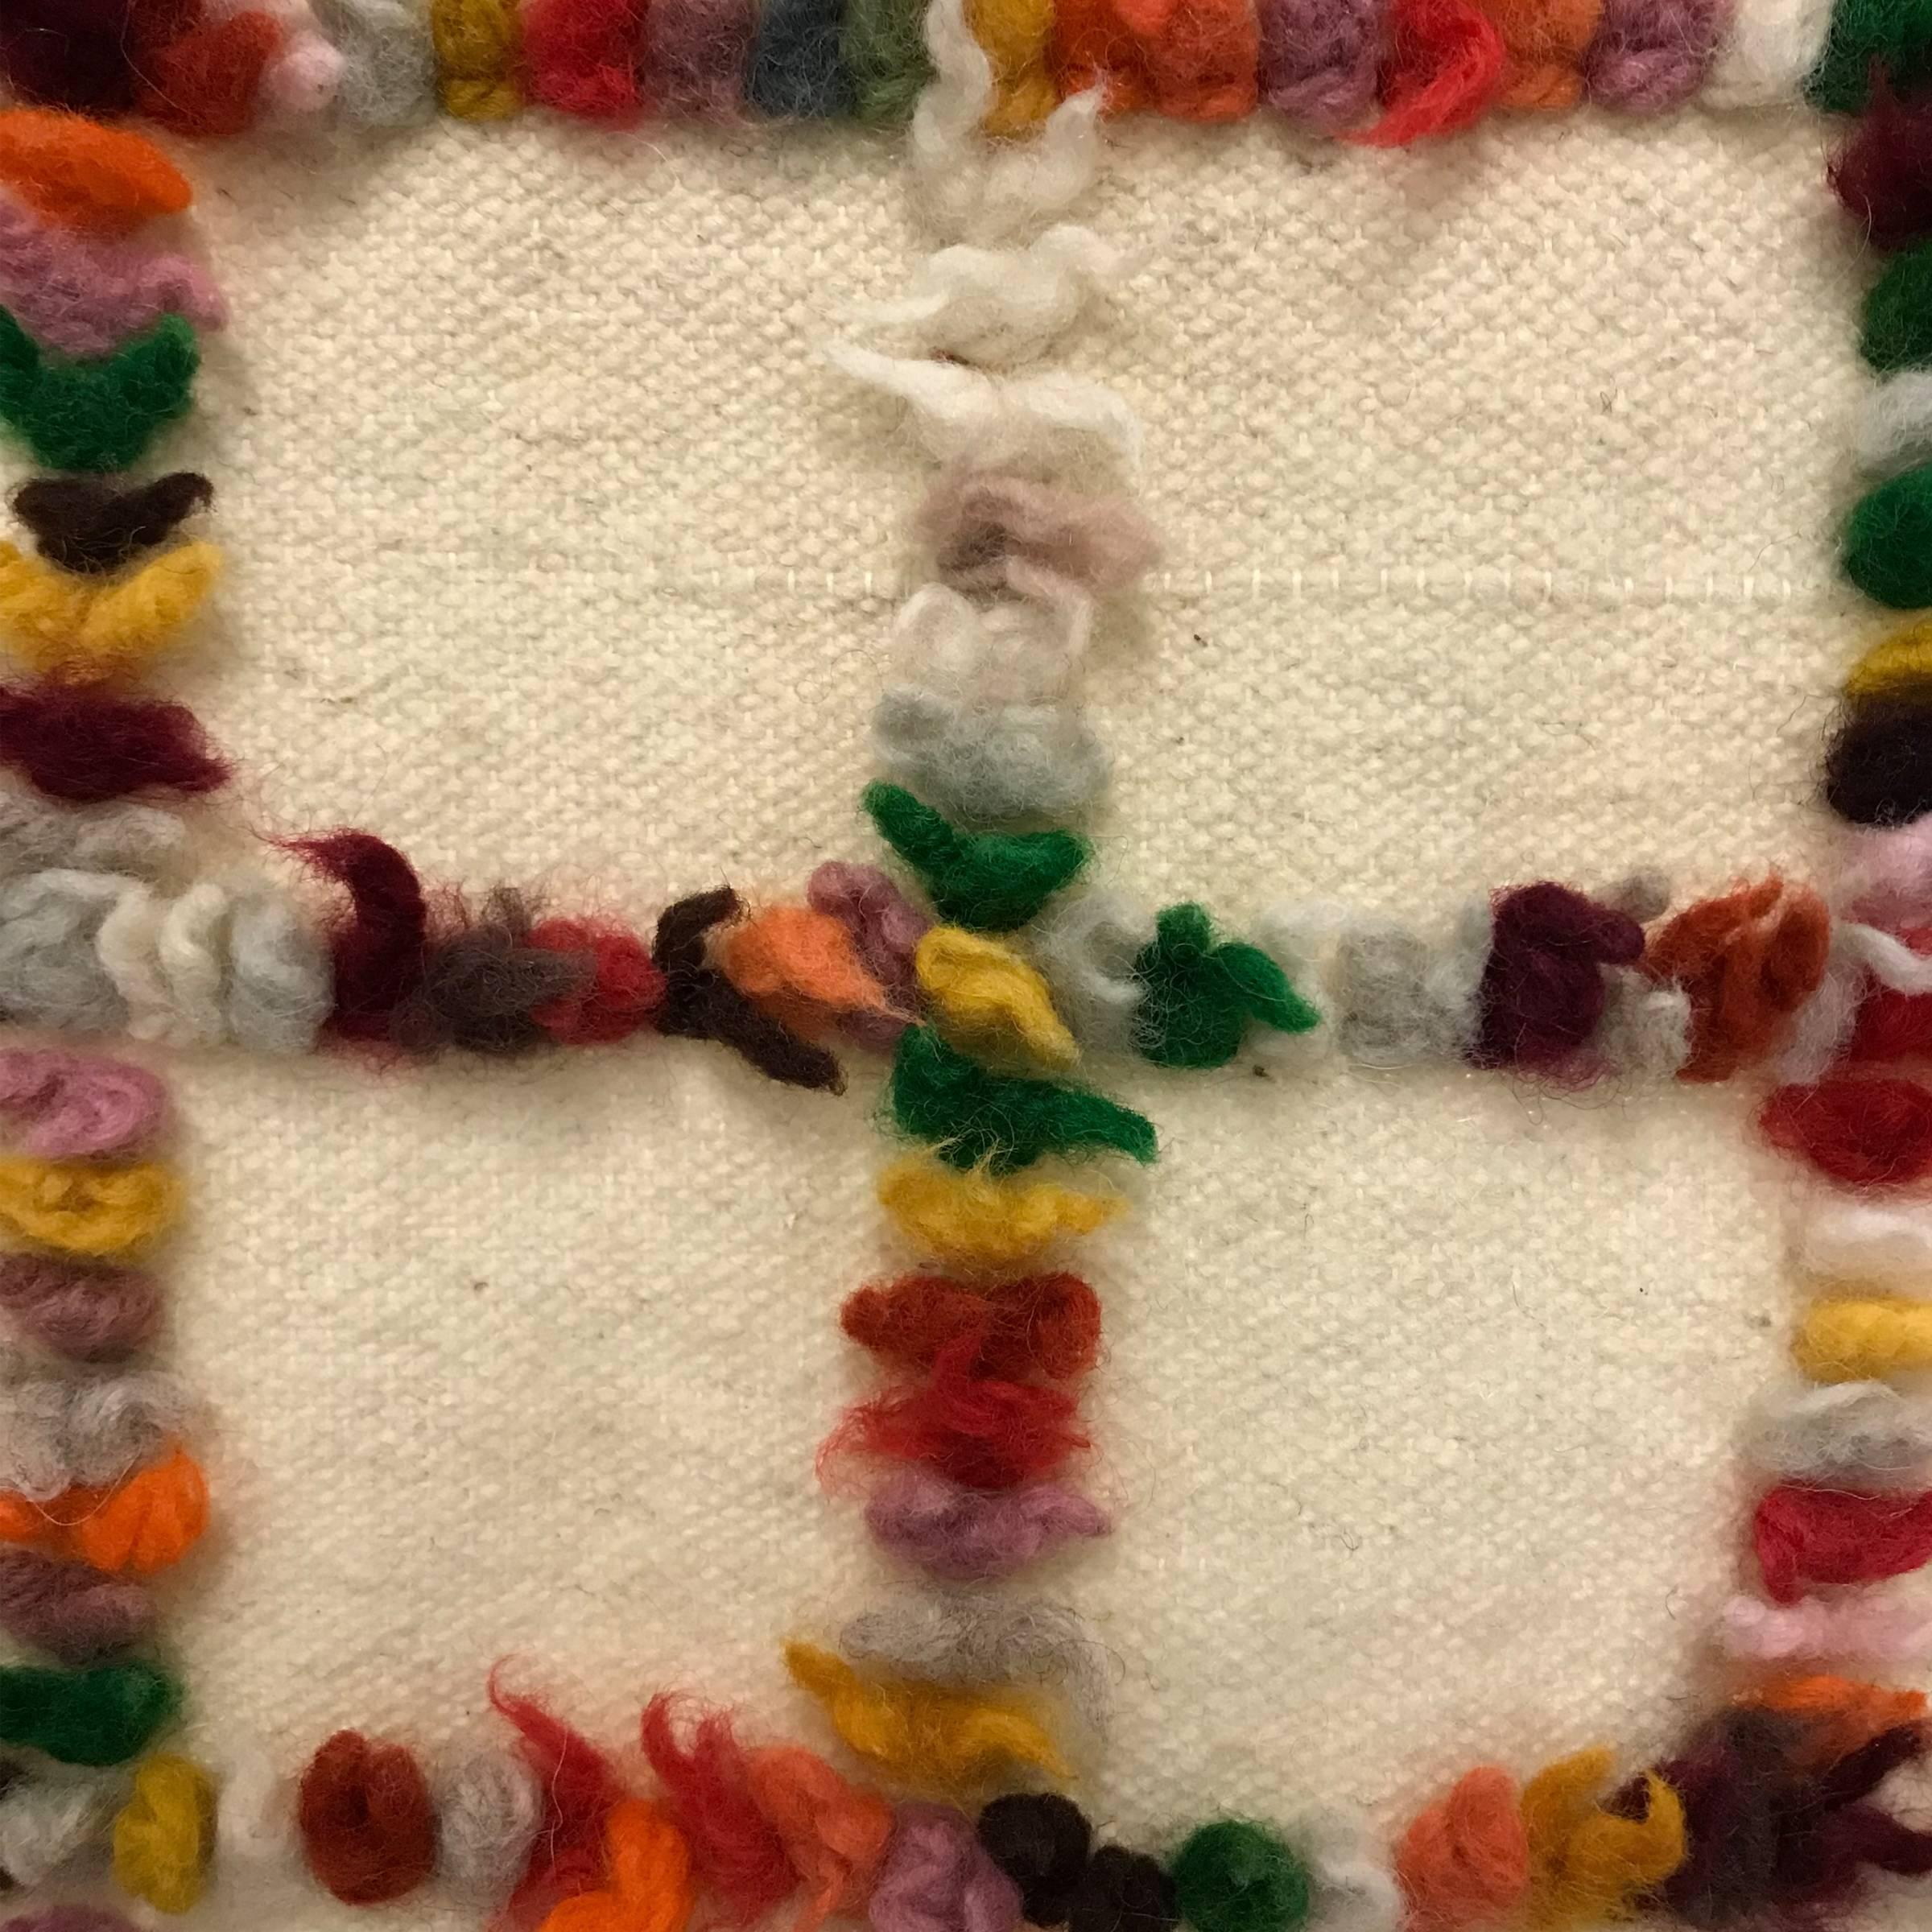 Une couverture ou un tapis turc vintage de type Tulu. Le sol est tissé de laine et de coton filés à la main, avec des touffes de laine colorée dans un motif écossais.